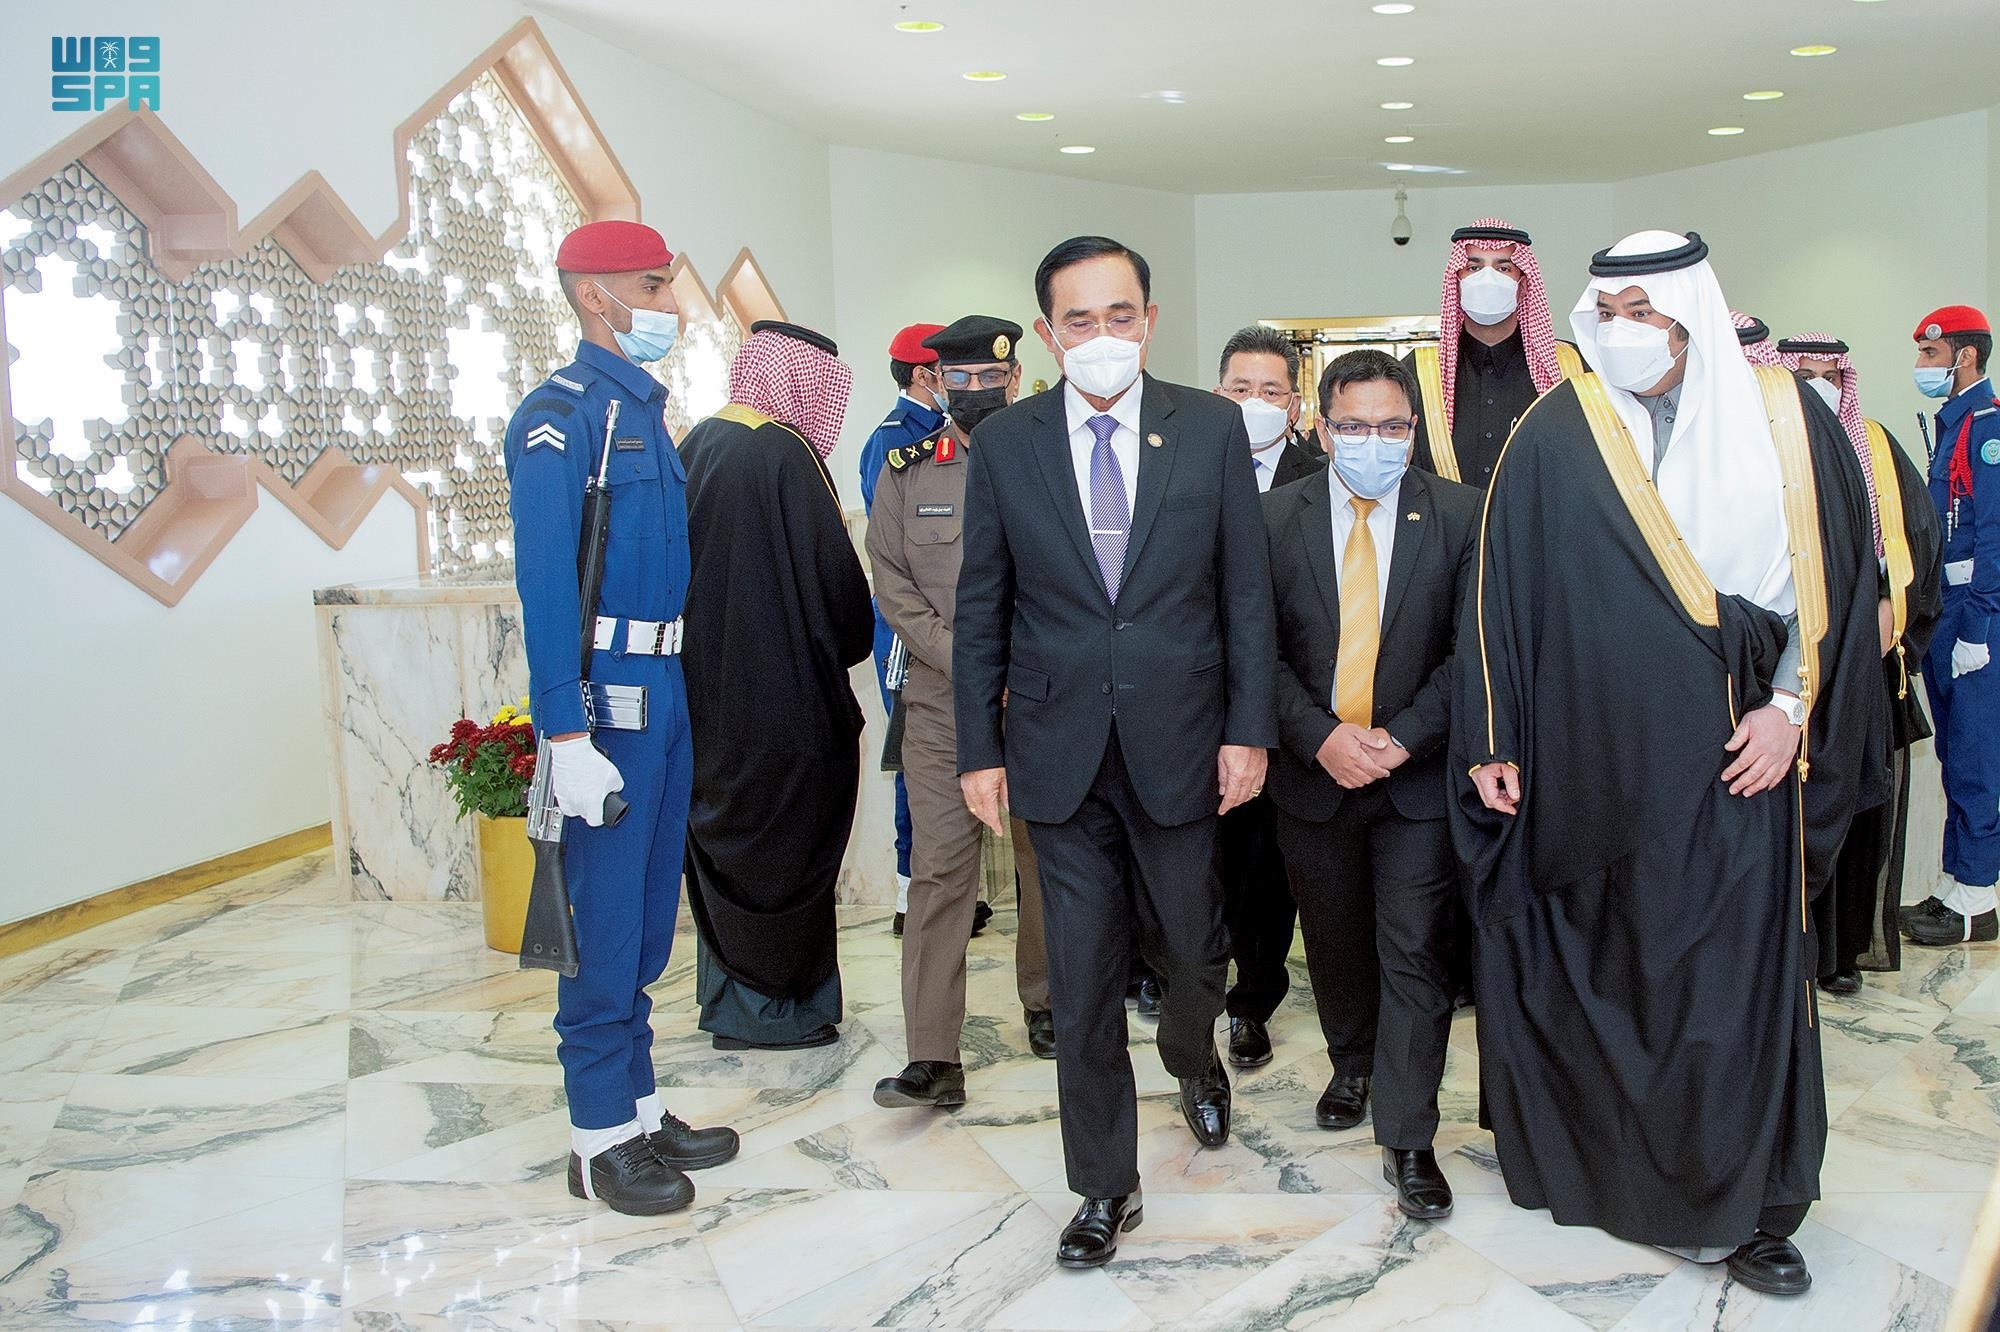 شاهد .. لحظة وصول رئيس وزراء تايلند إلى الرياض في زيارة رسمية للمملكة